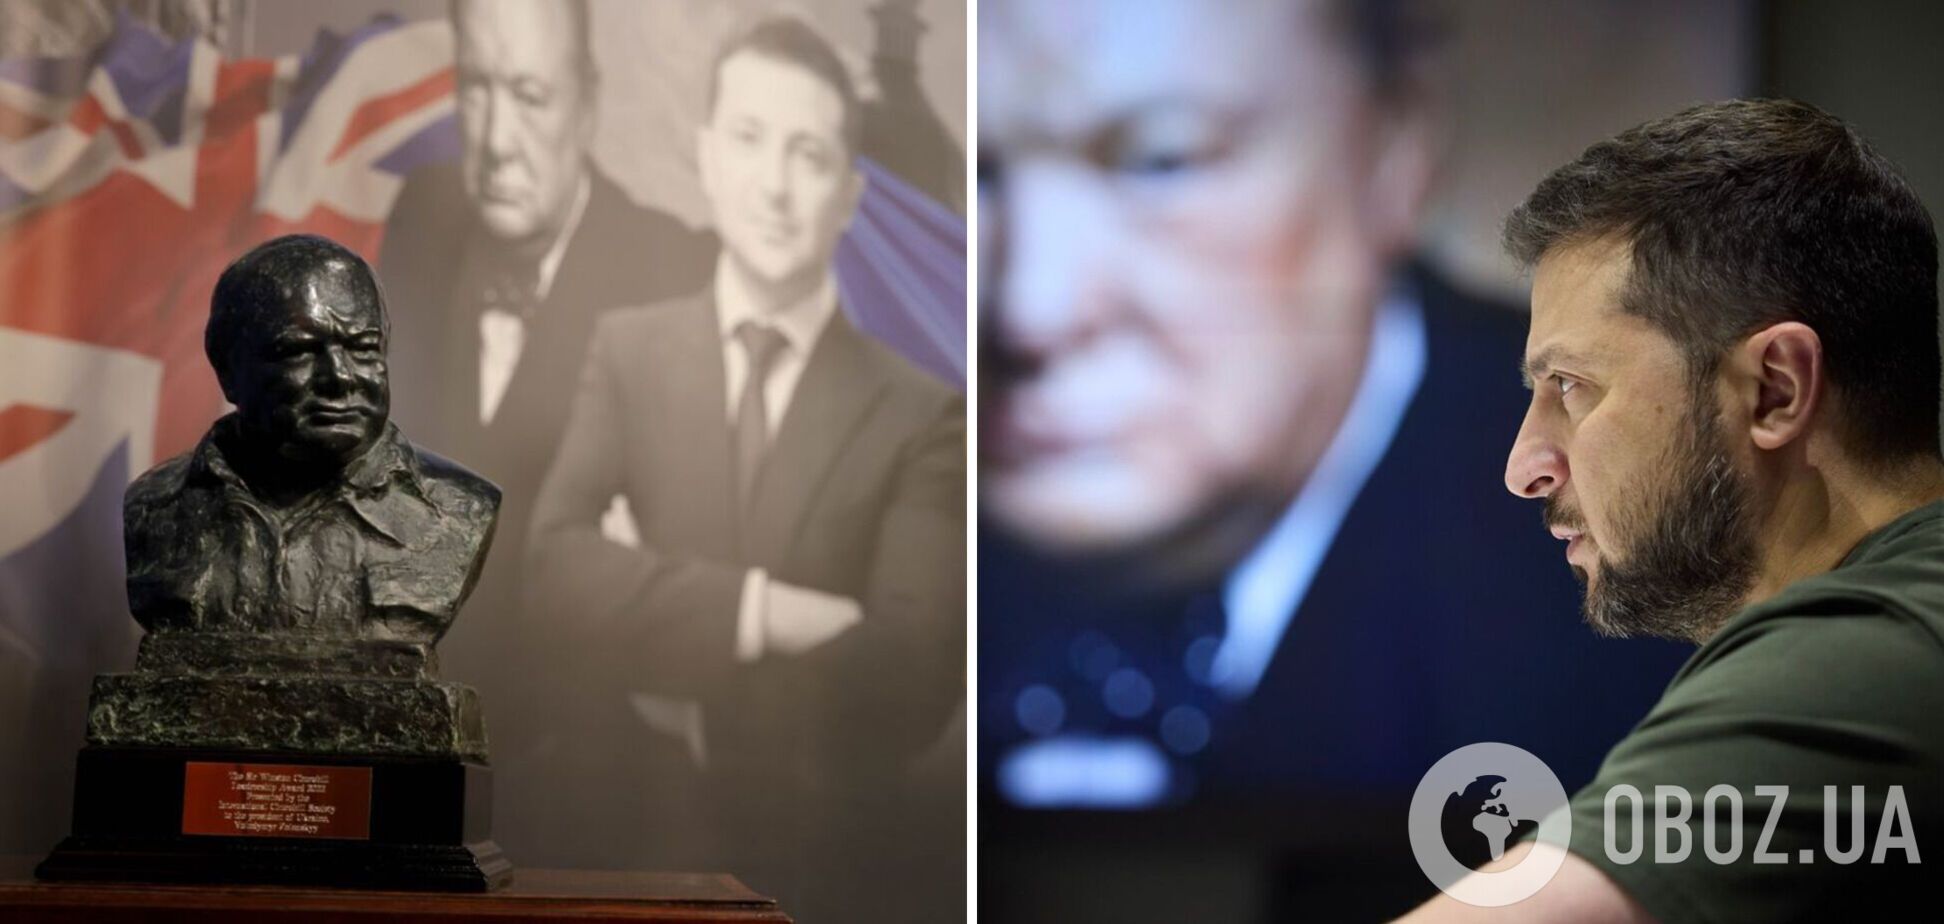 Зеленський отримав премію Черчилля за лідерство та подякував українцям, які піднялися на захист свободи від тиранії. Фото та відео